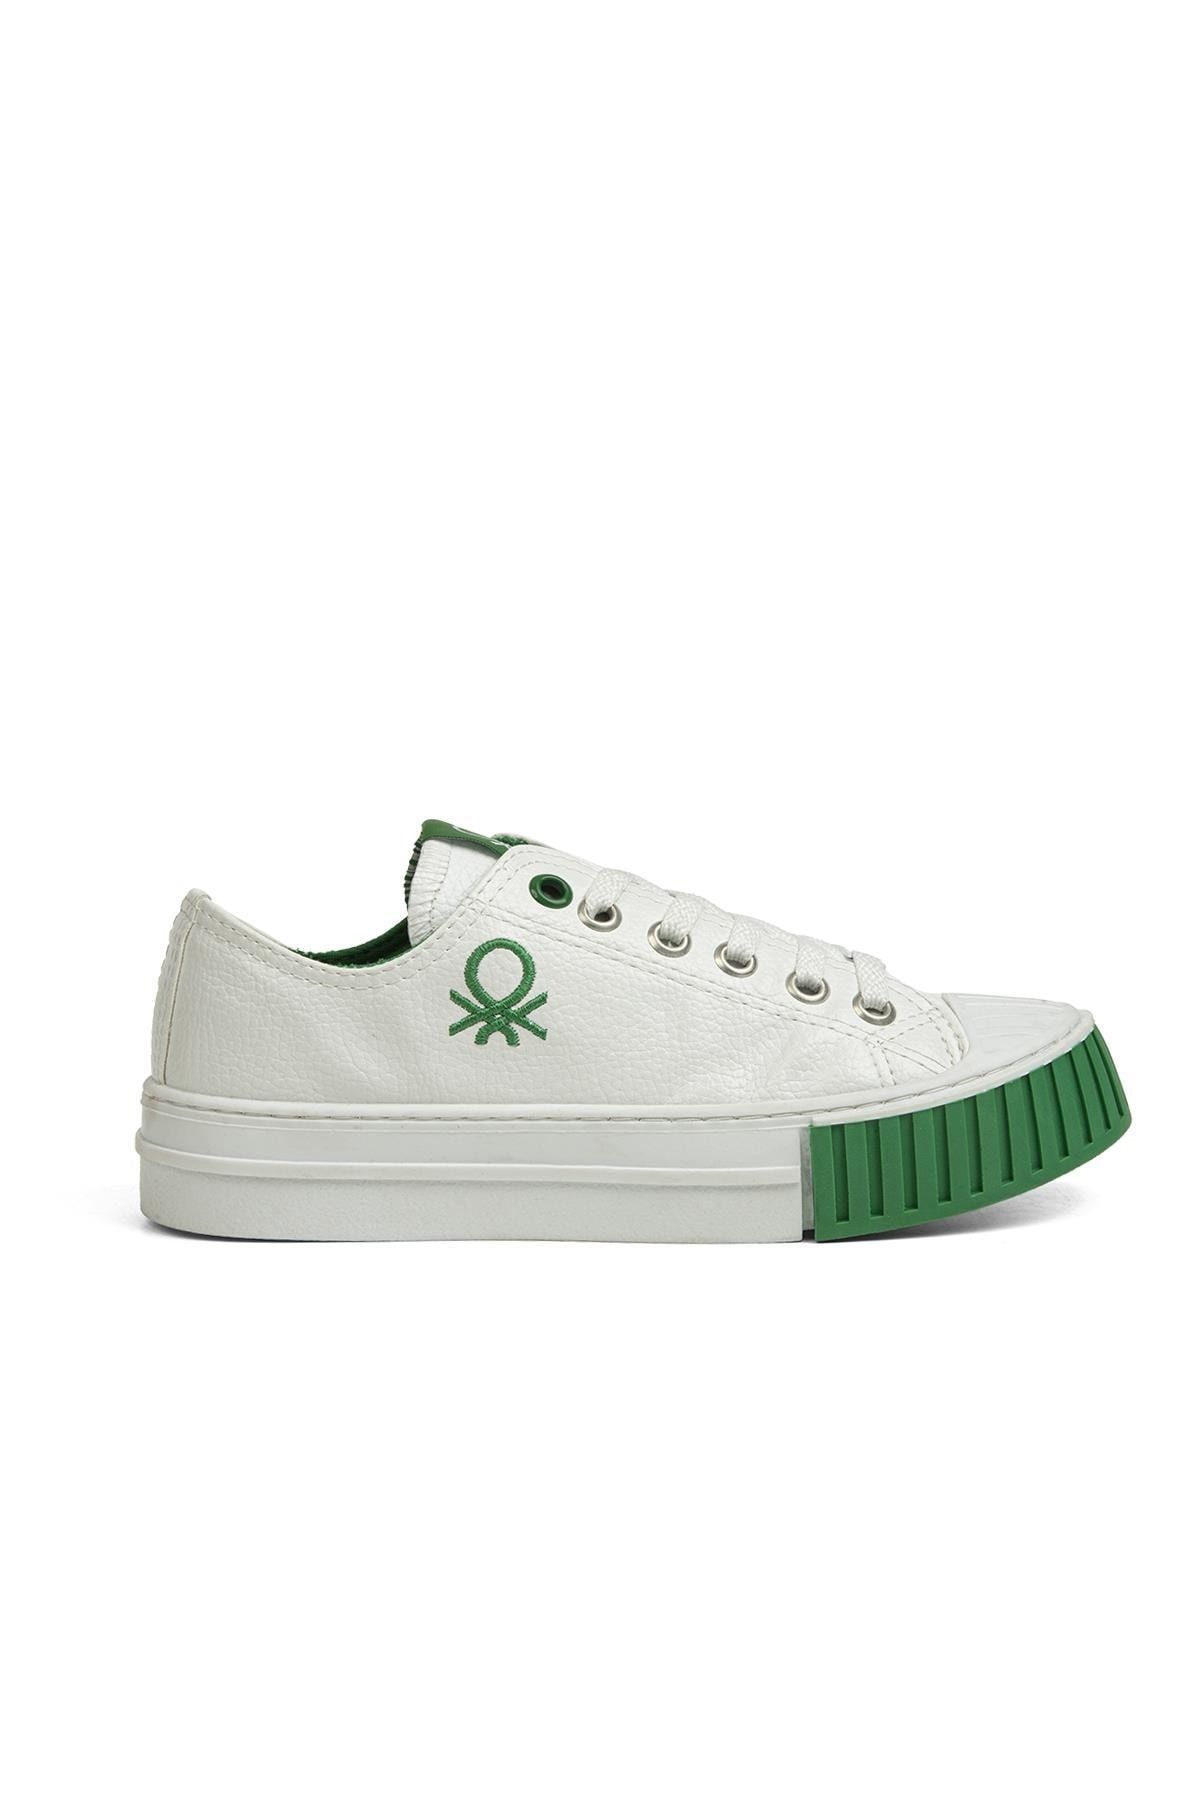 Benetton ® | Bn-30532 - 3374 Beyaz Yesil - Kadın Spor Ayakkabı